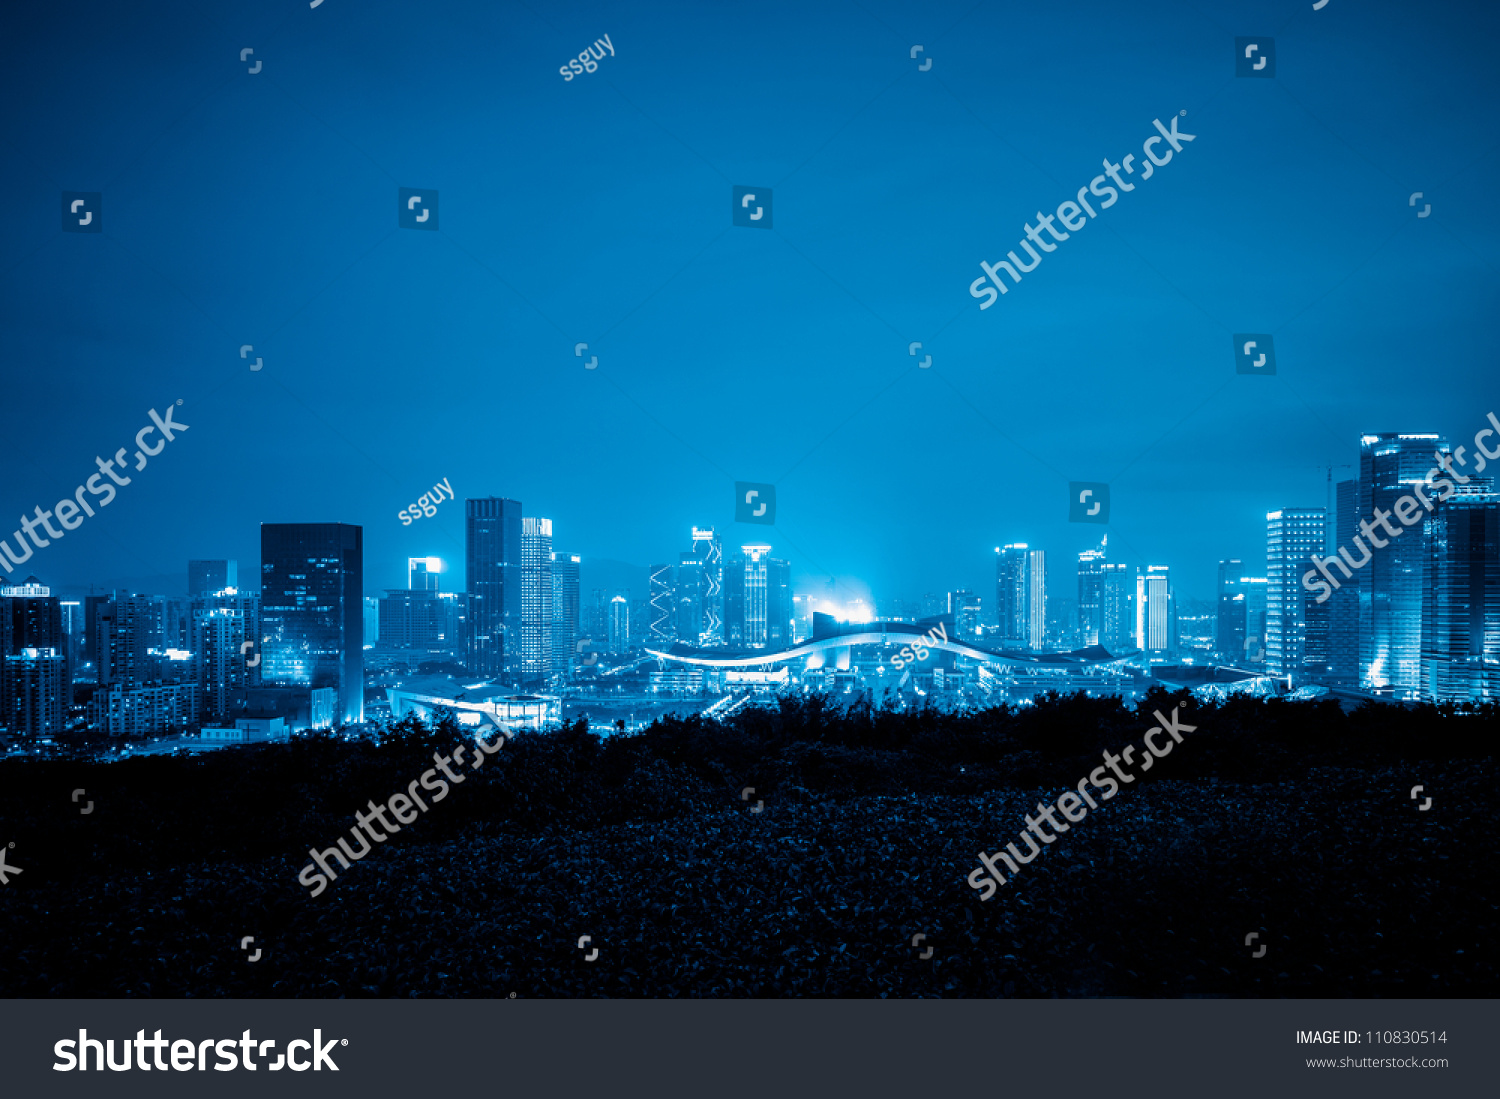 skyline of shenzhen china at night. #110830514